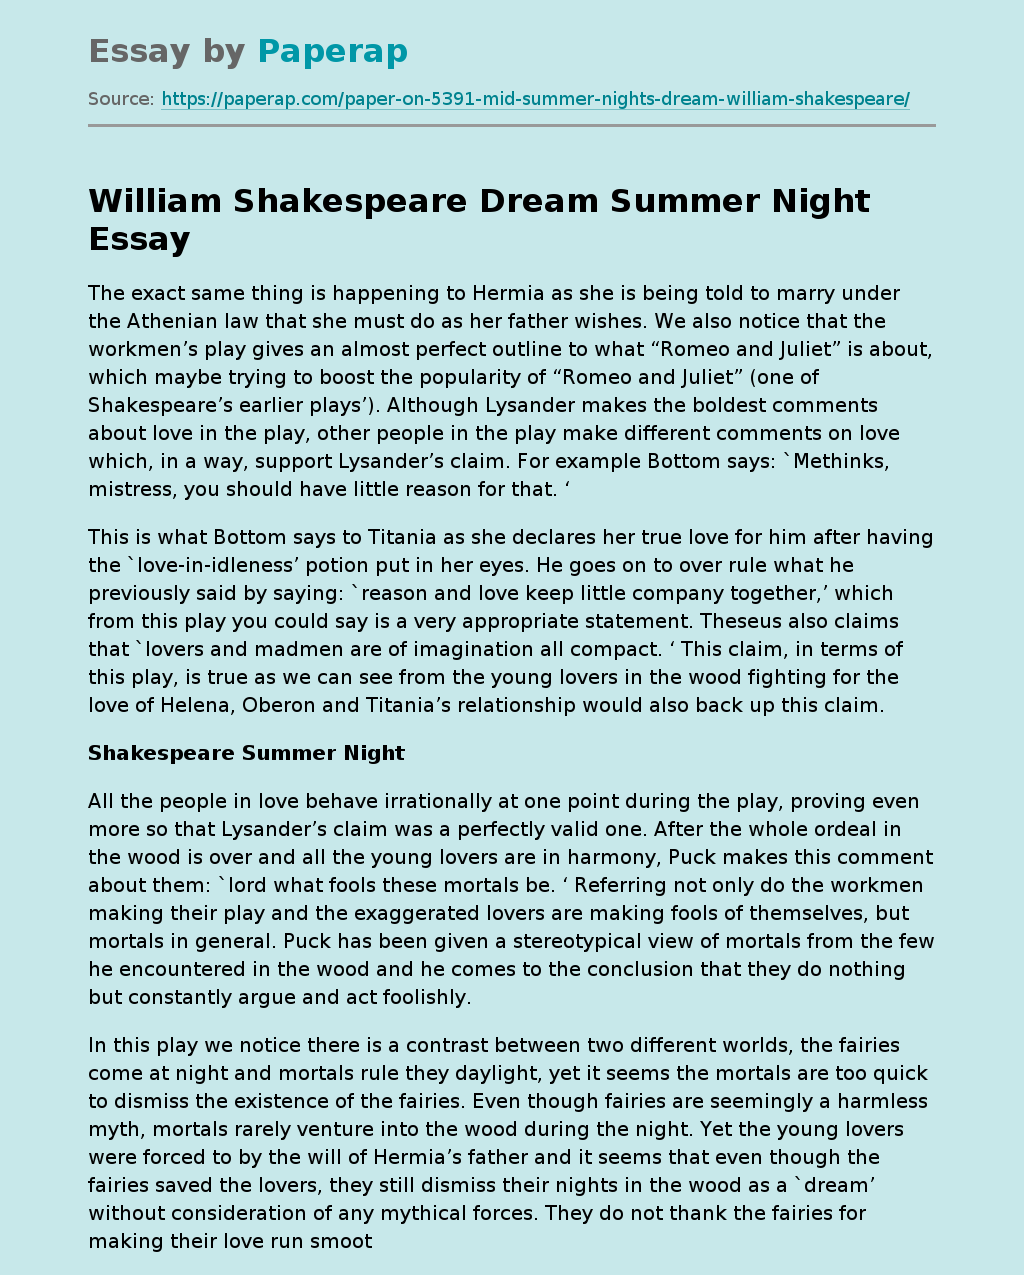 William Shakespeare Dream Summer Night